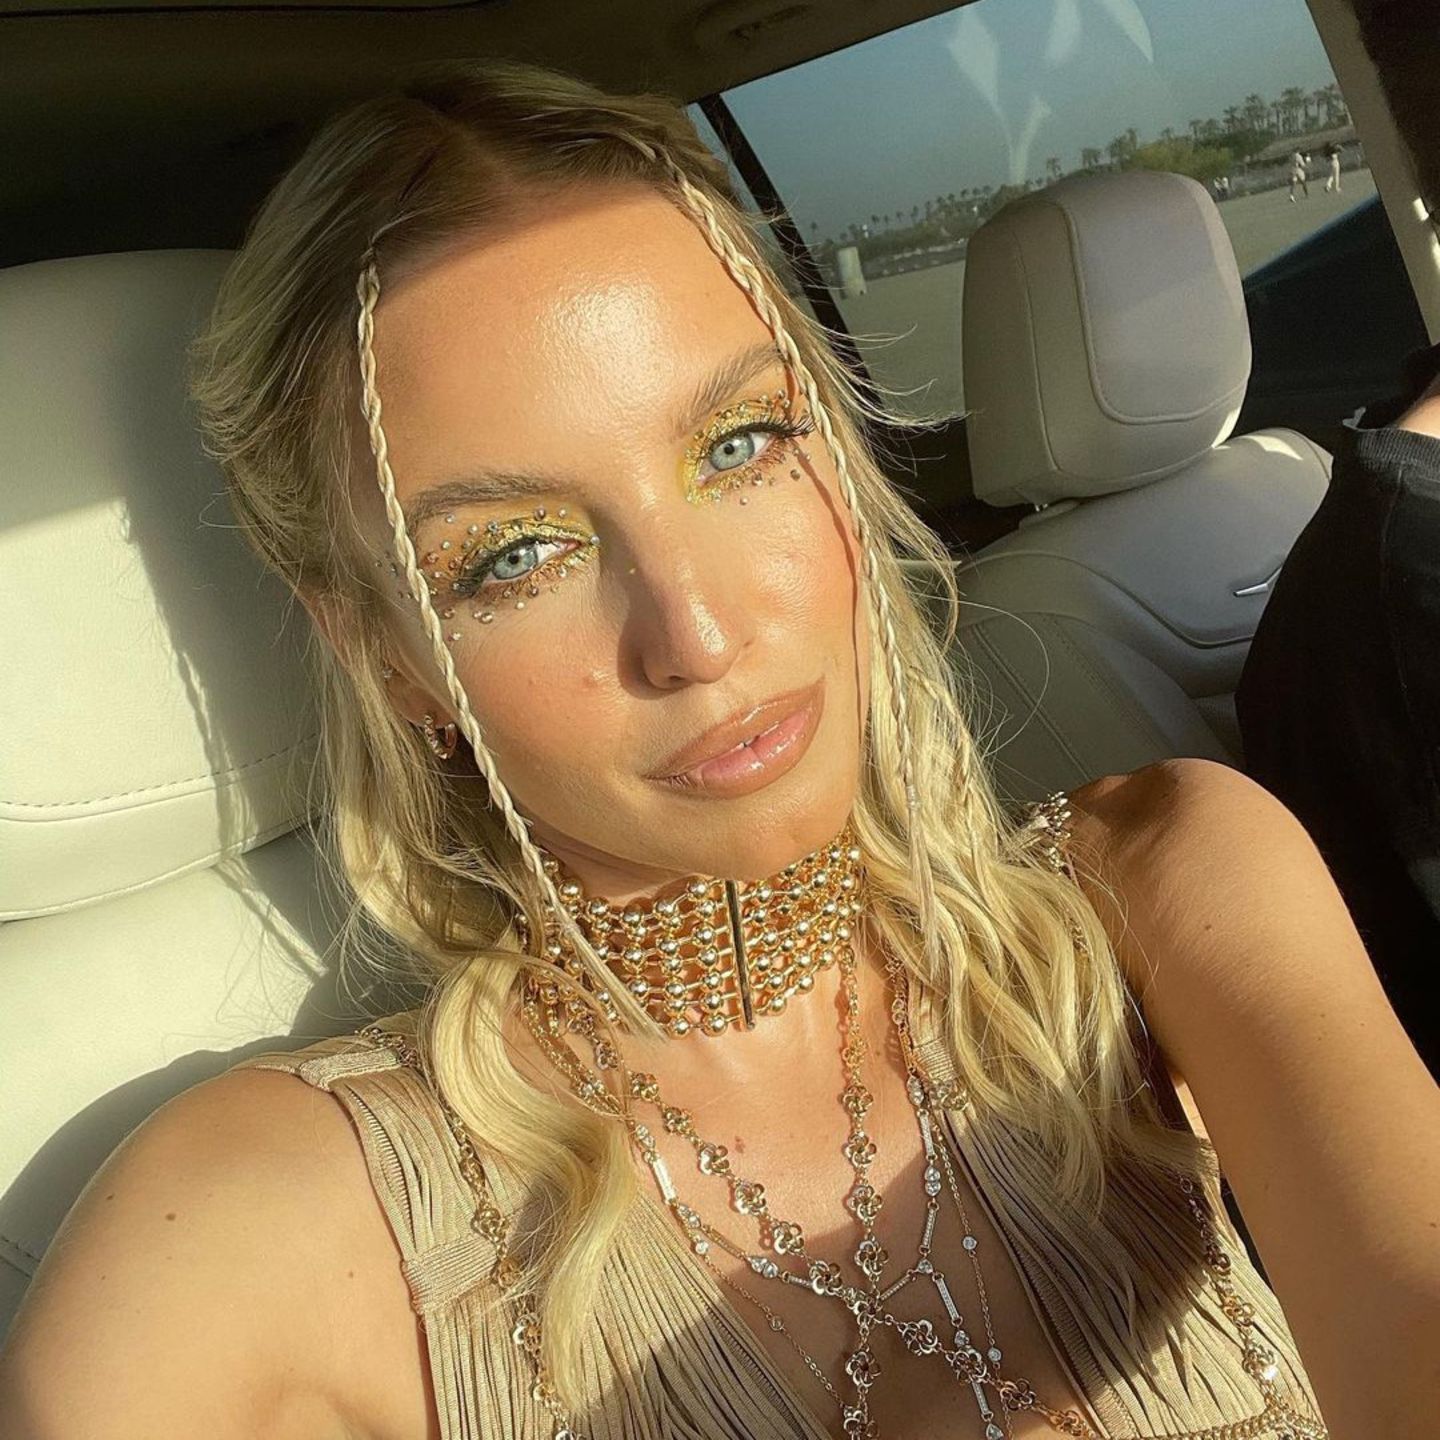 Bloggerin Leonie Hanne ist wie jedes Jahr einer der Stargäste auf dem Coachella-Festival – und dort muss man sich natürlich auch dementsprechend präsentieren. Leonie wählt für das Festival-Wochenende mehrere Variationen des Glitzersteinchen-Looks und ergänzt ihn durch gelben Lidschatten und glänzende Nude-Lips.